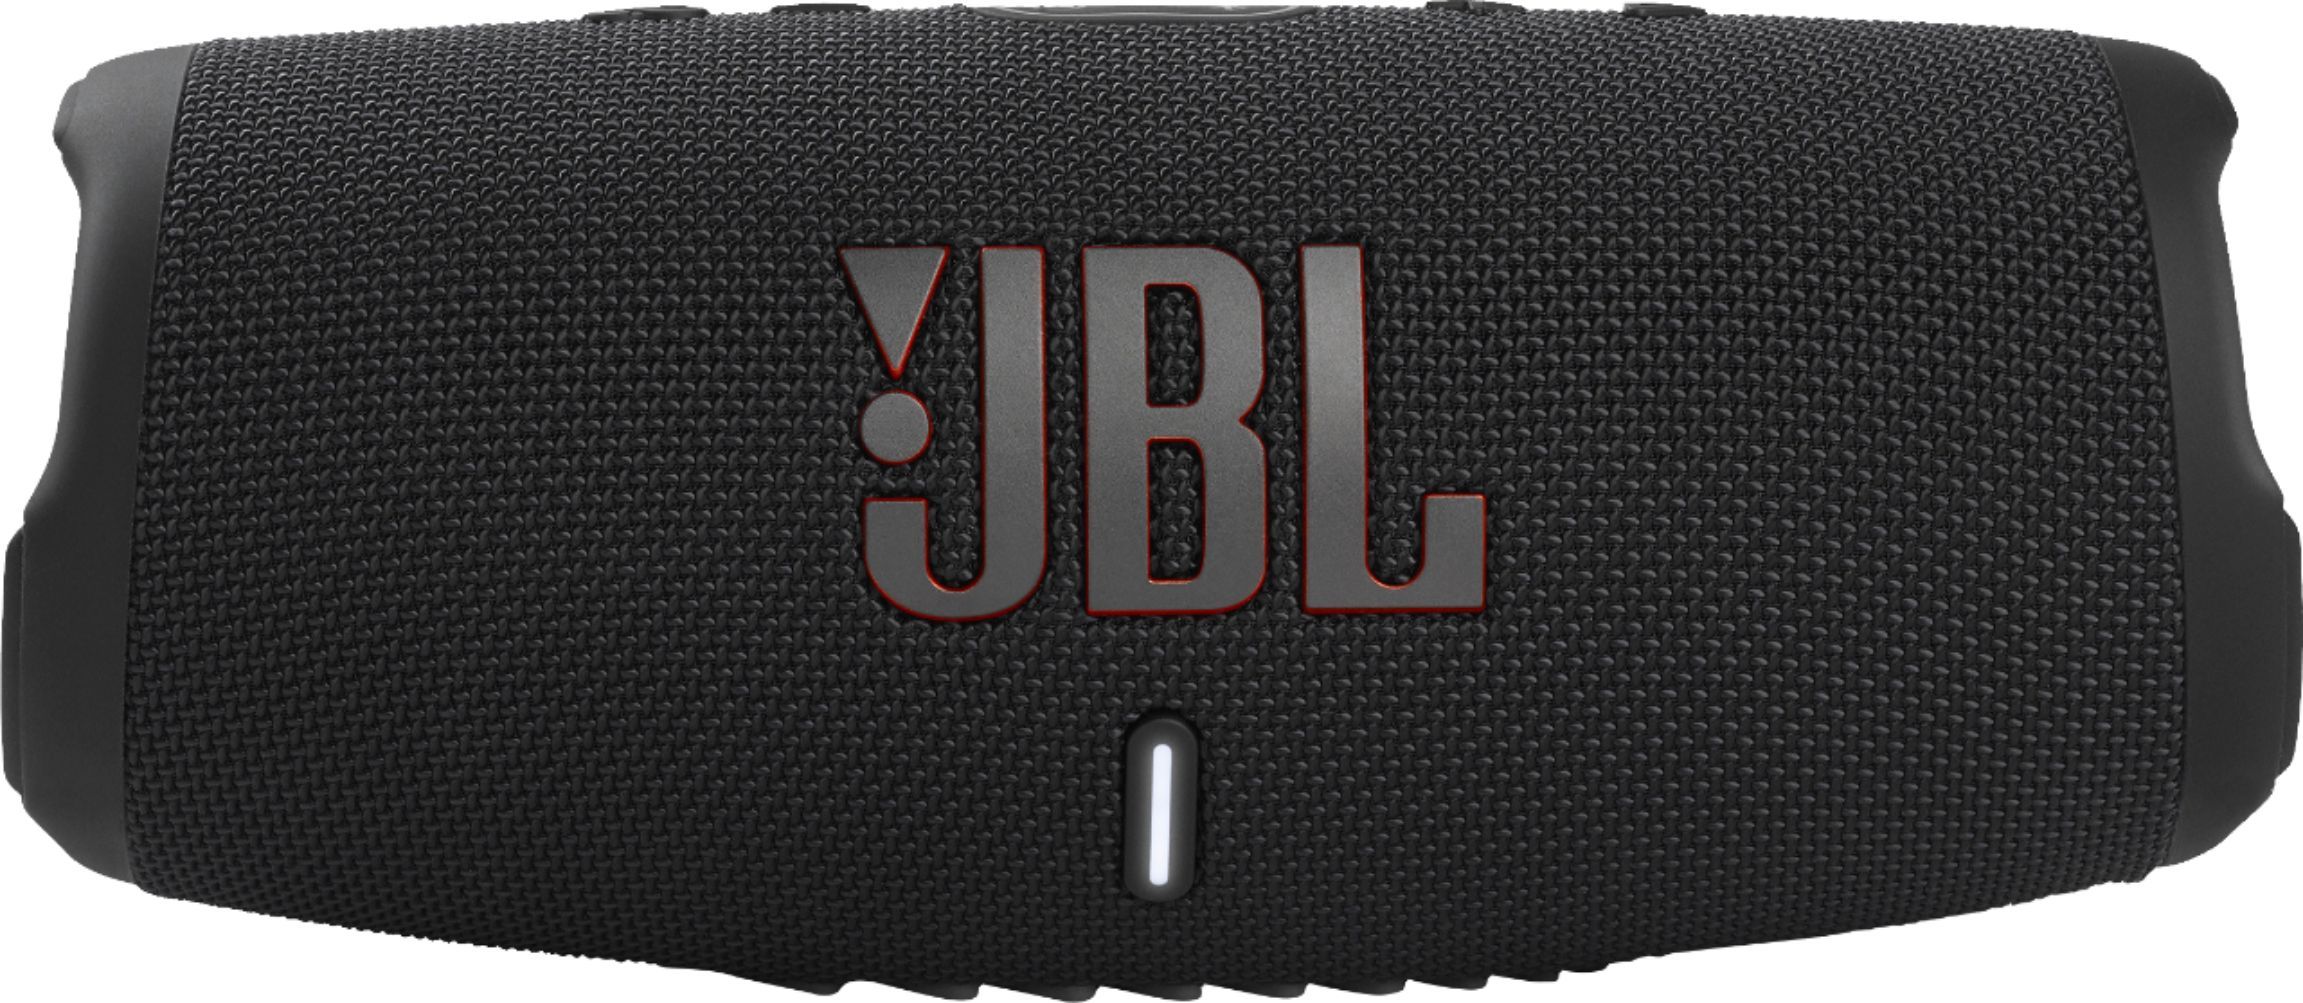 JBL CHARGE5 Portable Waterproof Speaker with Powerbank Black JBLCHARGE5BLKAM - Best Buy | Best Buy U.S.